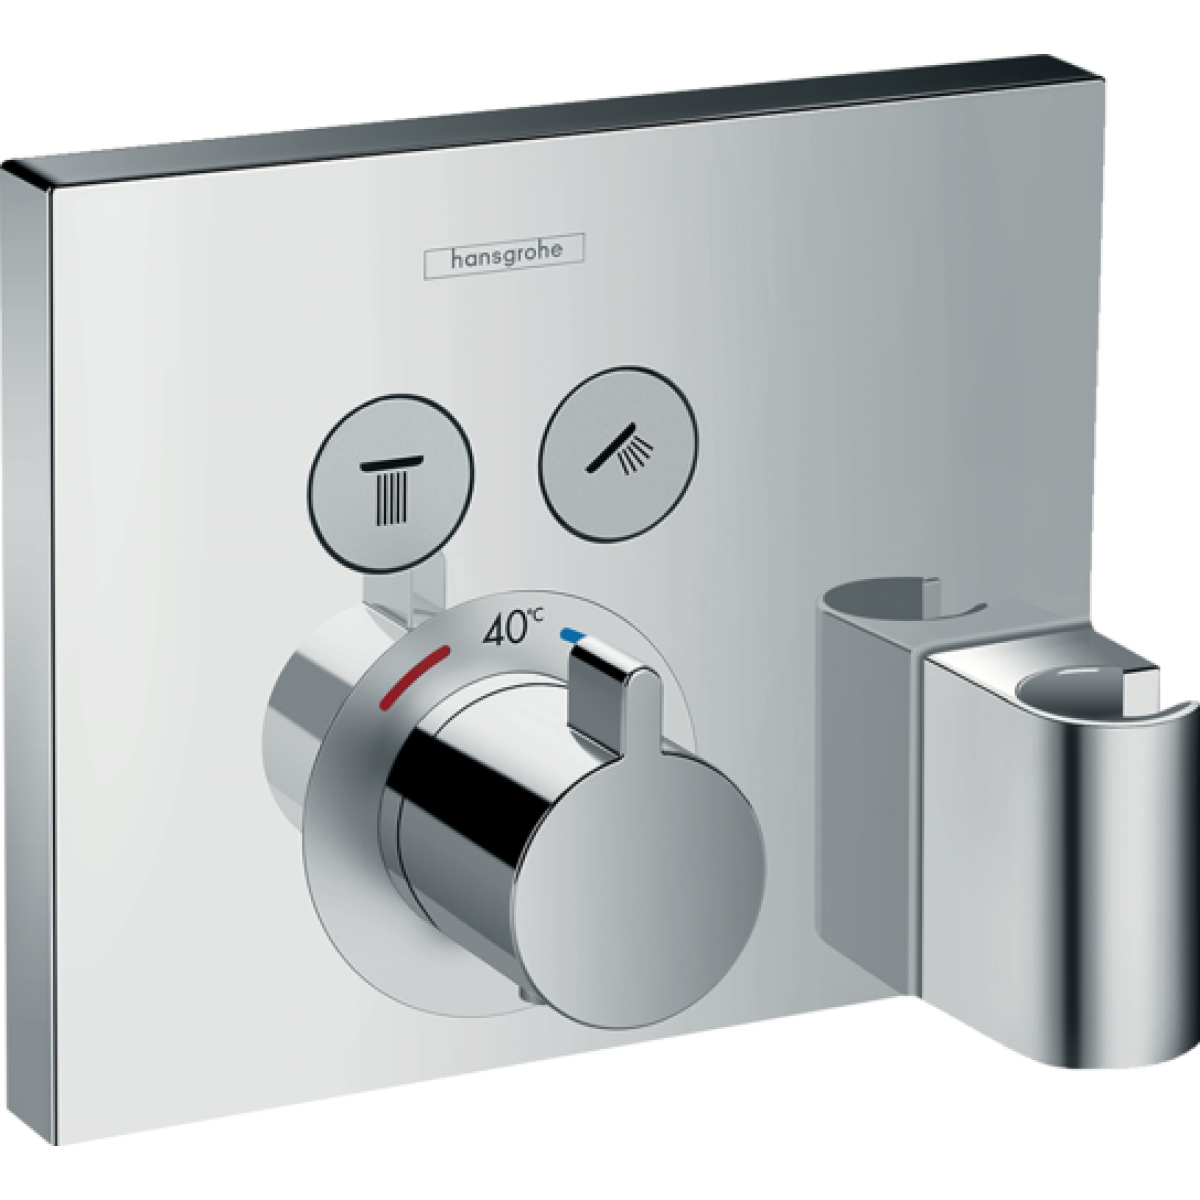 Hansgrohe - Hansgrohe - Set de finition pour mitigeur thermostatique ShowerSelect encastré avec 2 fonctions, fixfit et porter chromé - Mitigeur douche